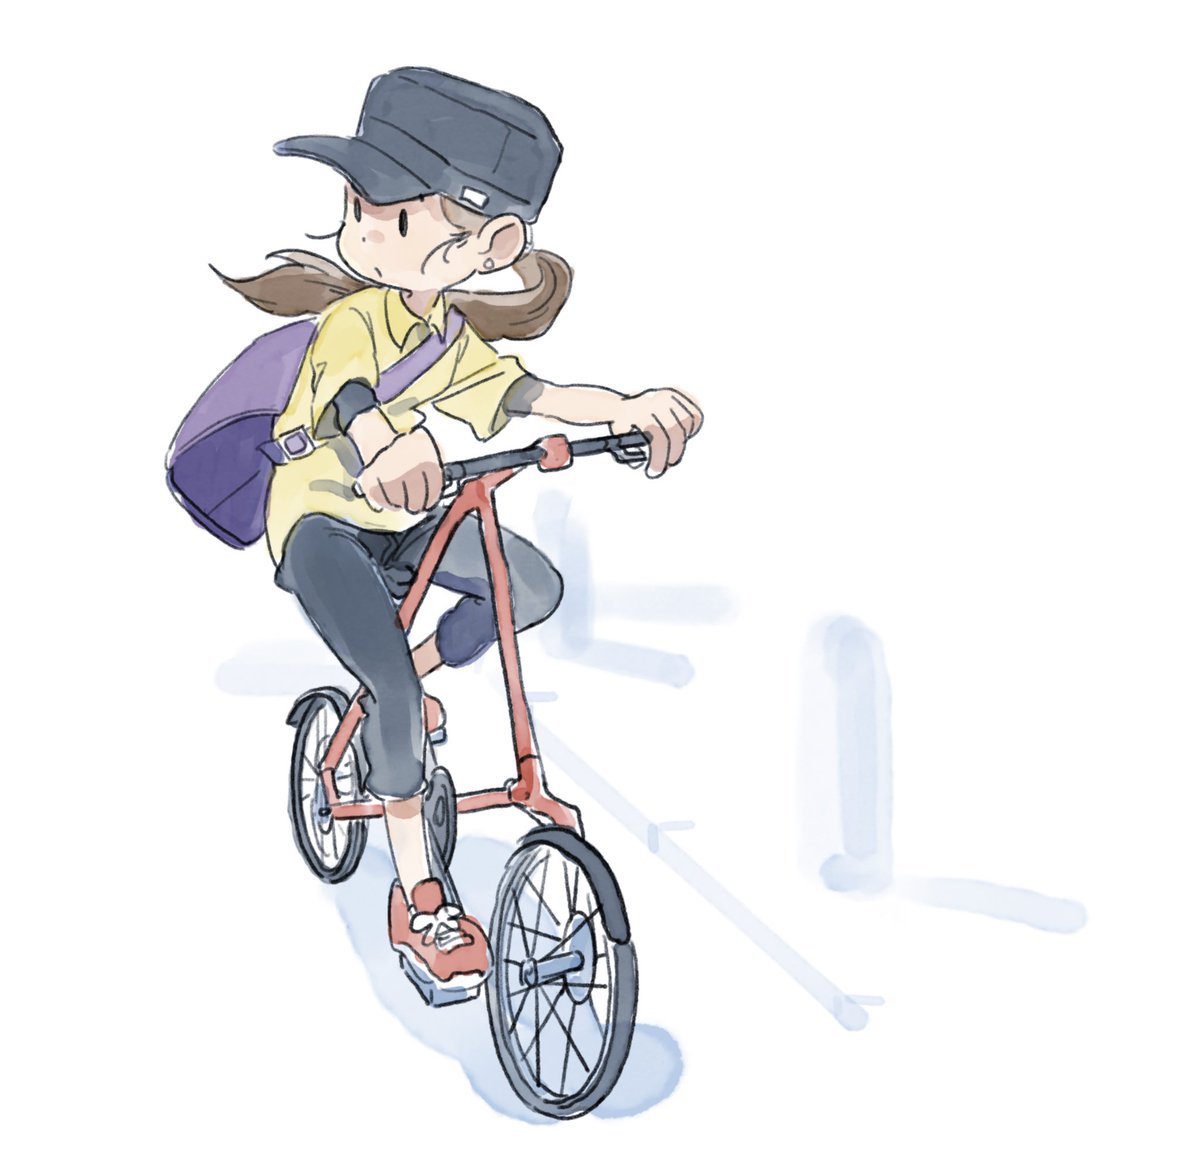 「サイクリング 」|フジワラヨシト|ｲﾗｽﾄﾚｰﾀｰのイラスト